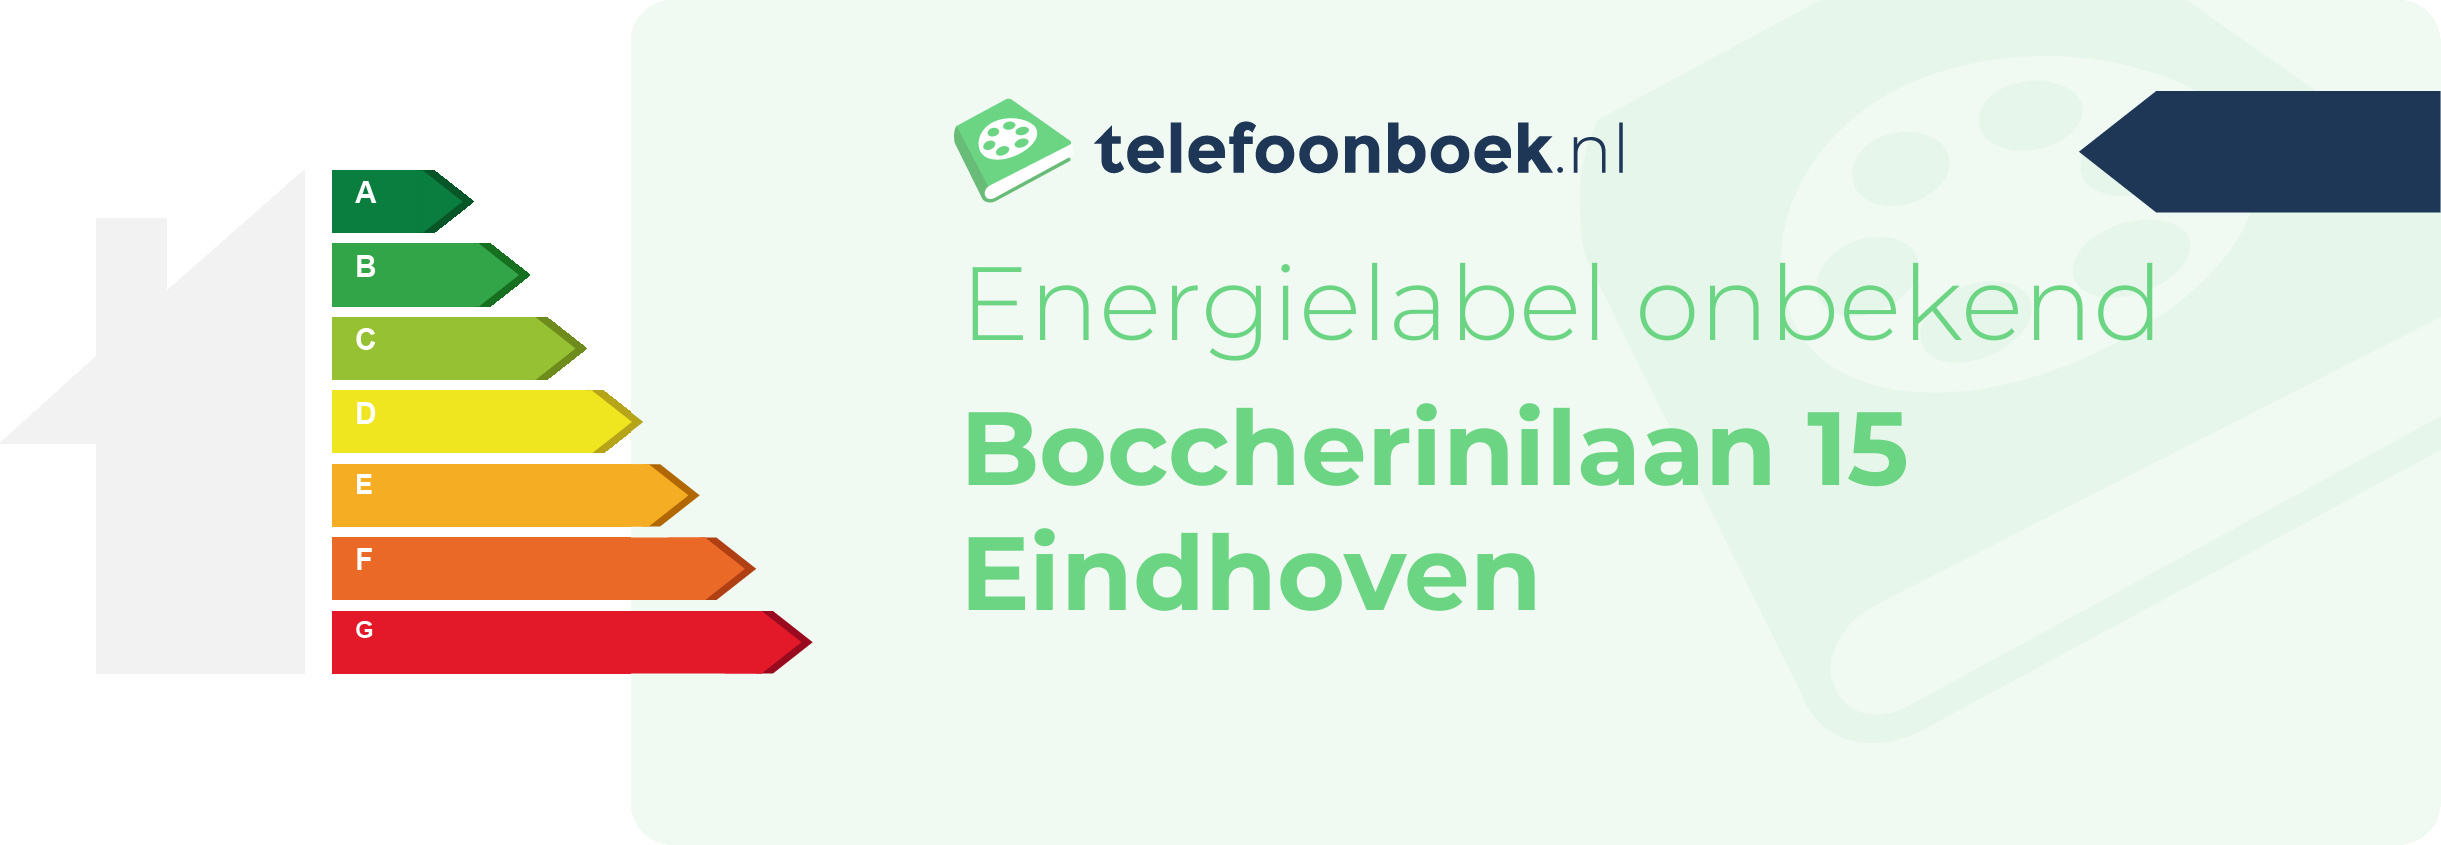 Energielabel Boccherinilaan 15 Eindhoven